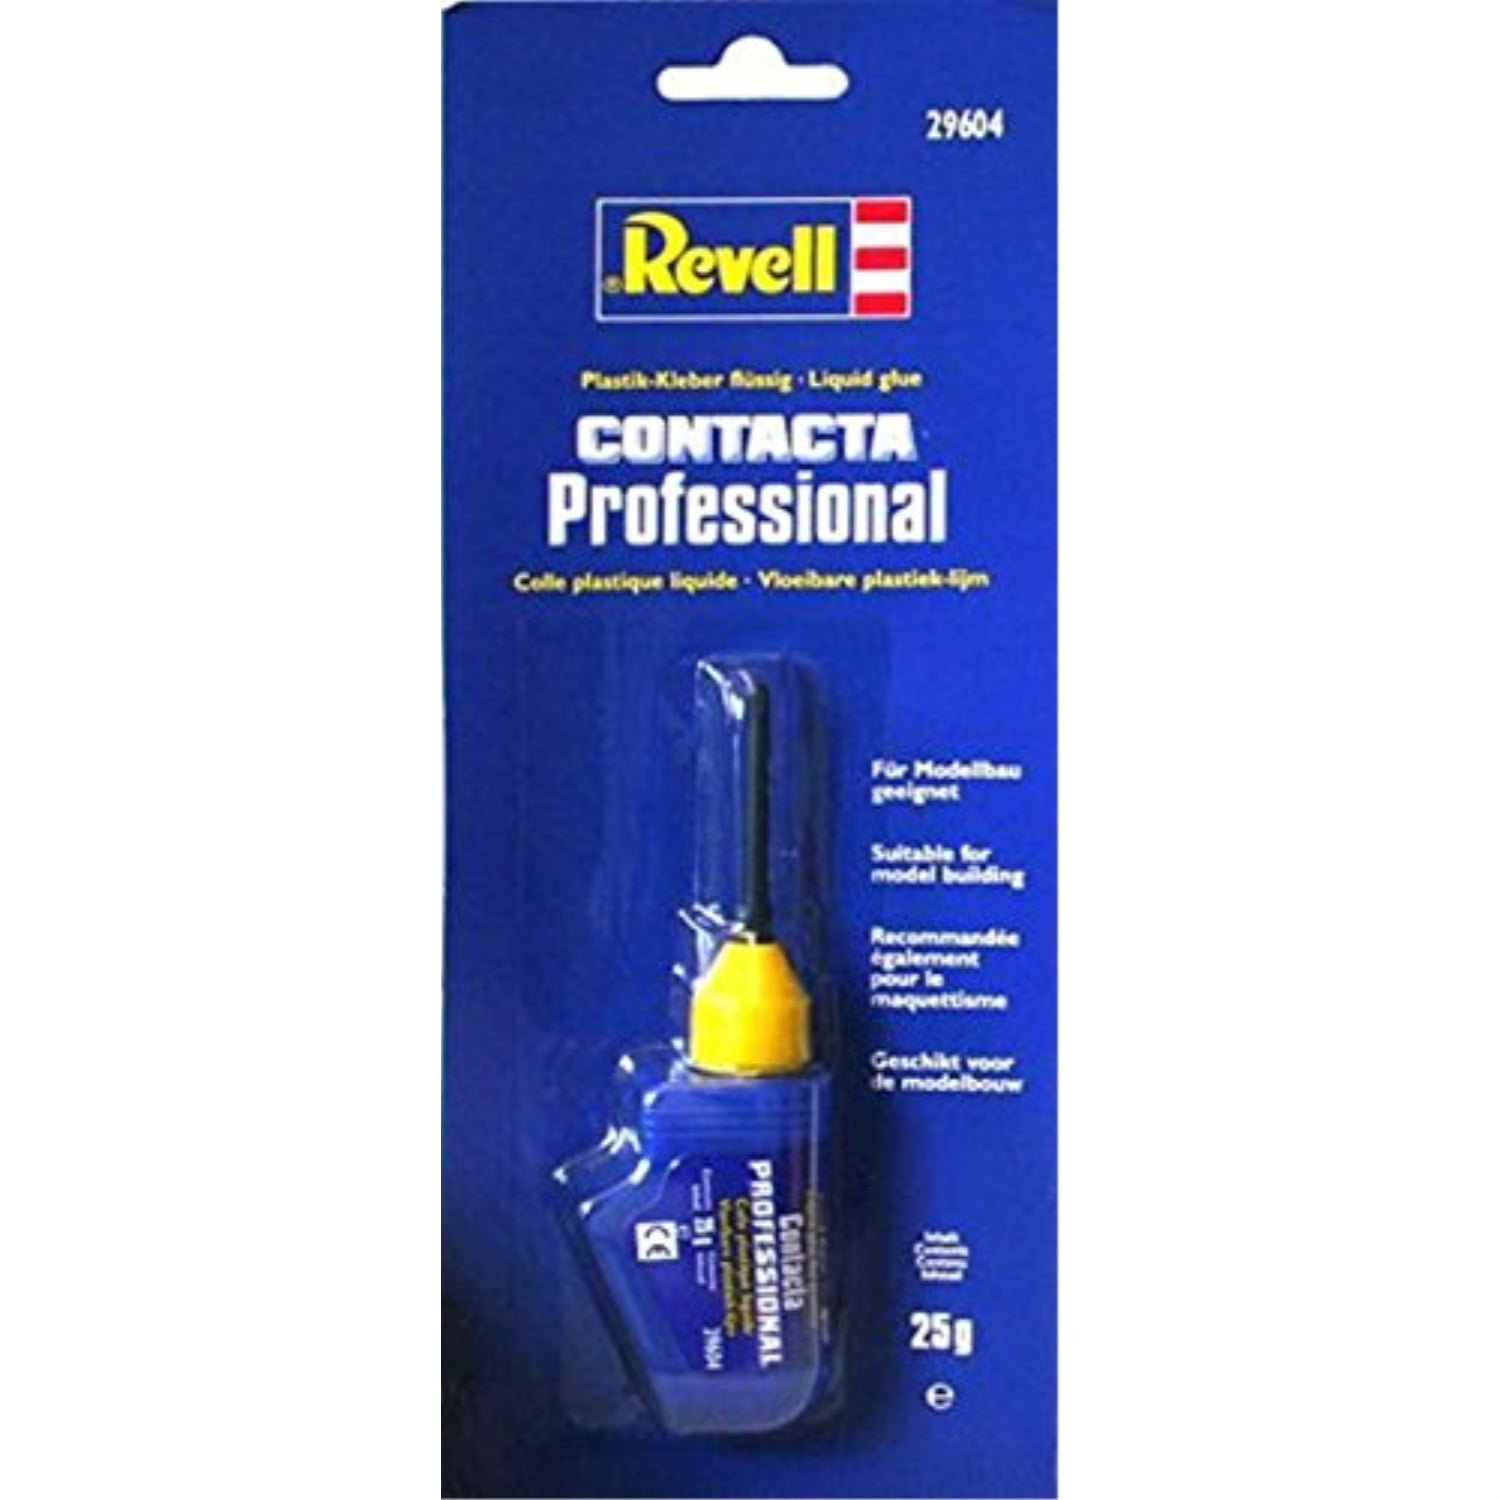 Buy Revell CONTACTA LIQUID LEIM PVC adhesive 39601 18 g